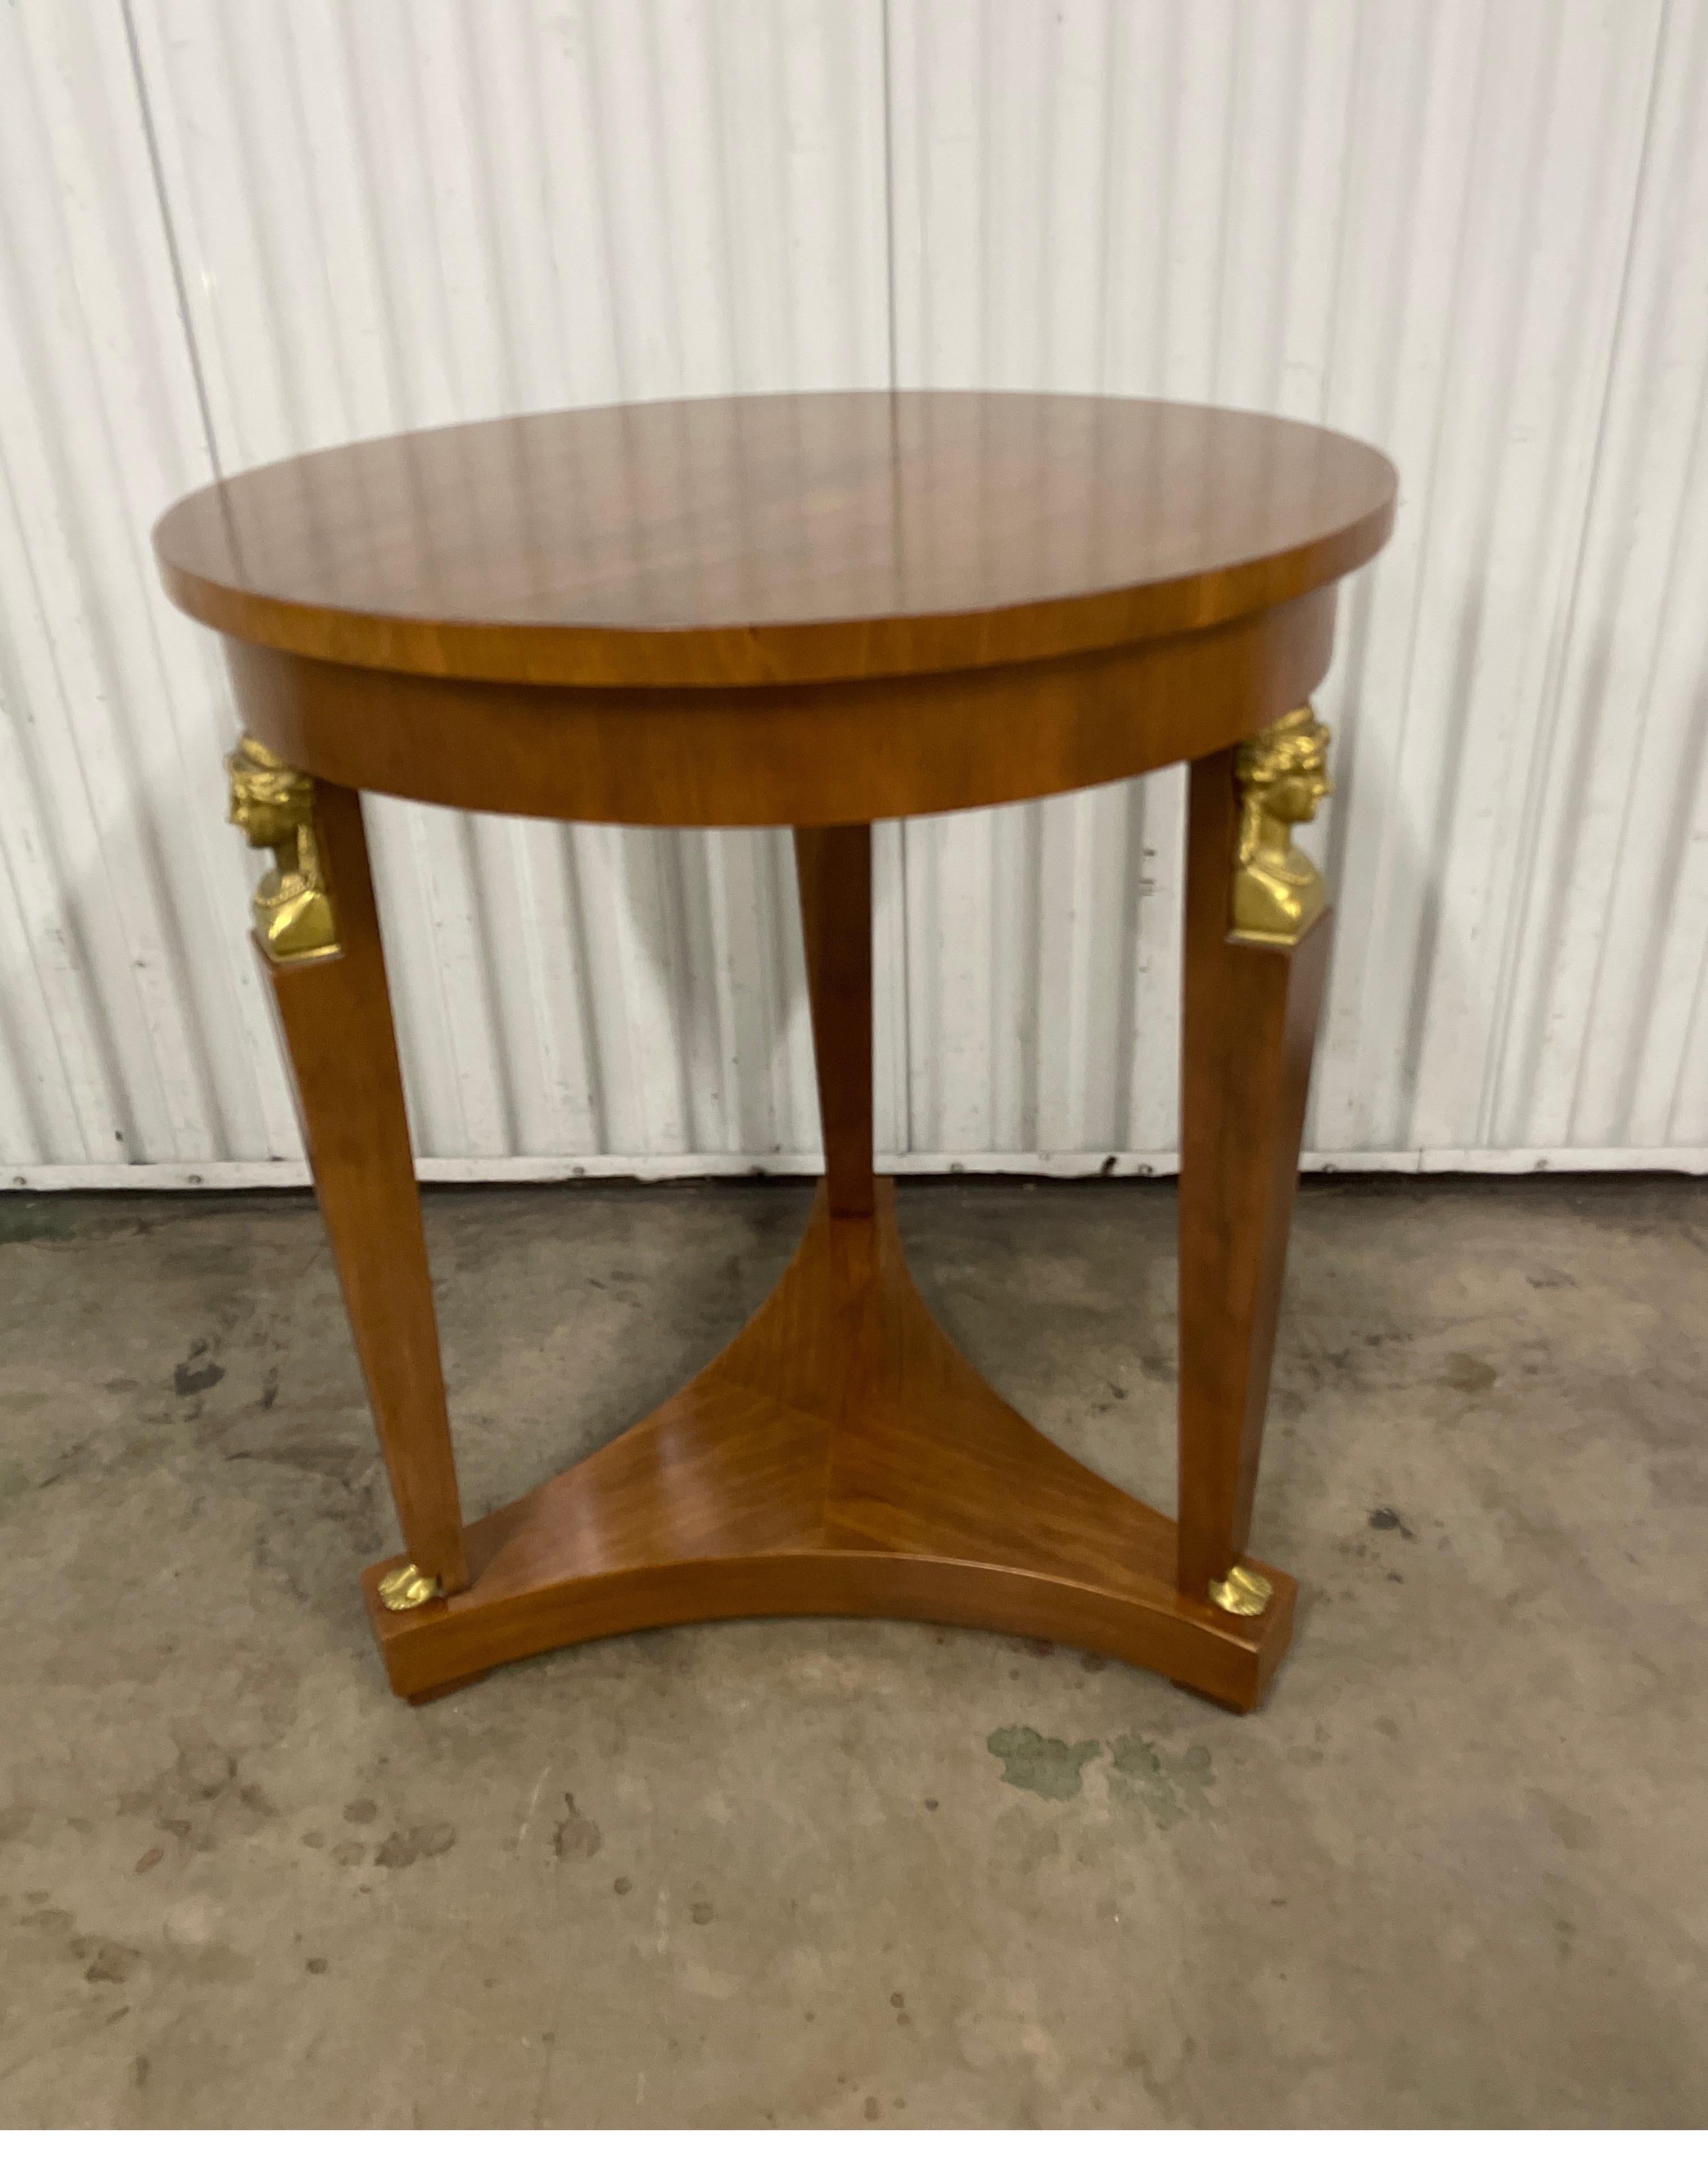 Runder Beistelltisch im neoklassischen Vintage-Stil von Baker Furniture Company. Dieser markante Tisch hat drei Beine, die mit einer Bodenschürze verbunden sind. Jedes Bein hat oben ein Sphinxgesicht aus Messing und ist unten mit einem Messingfuß